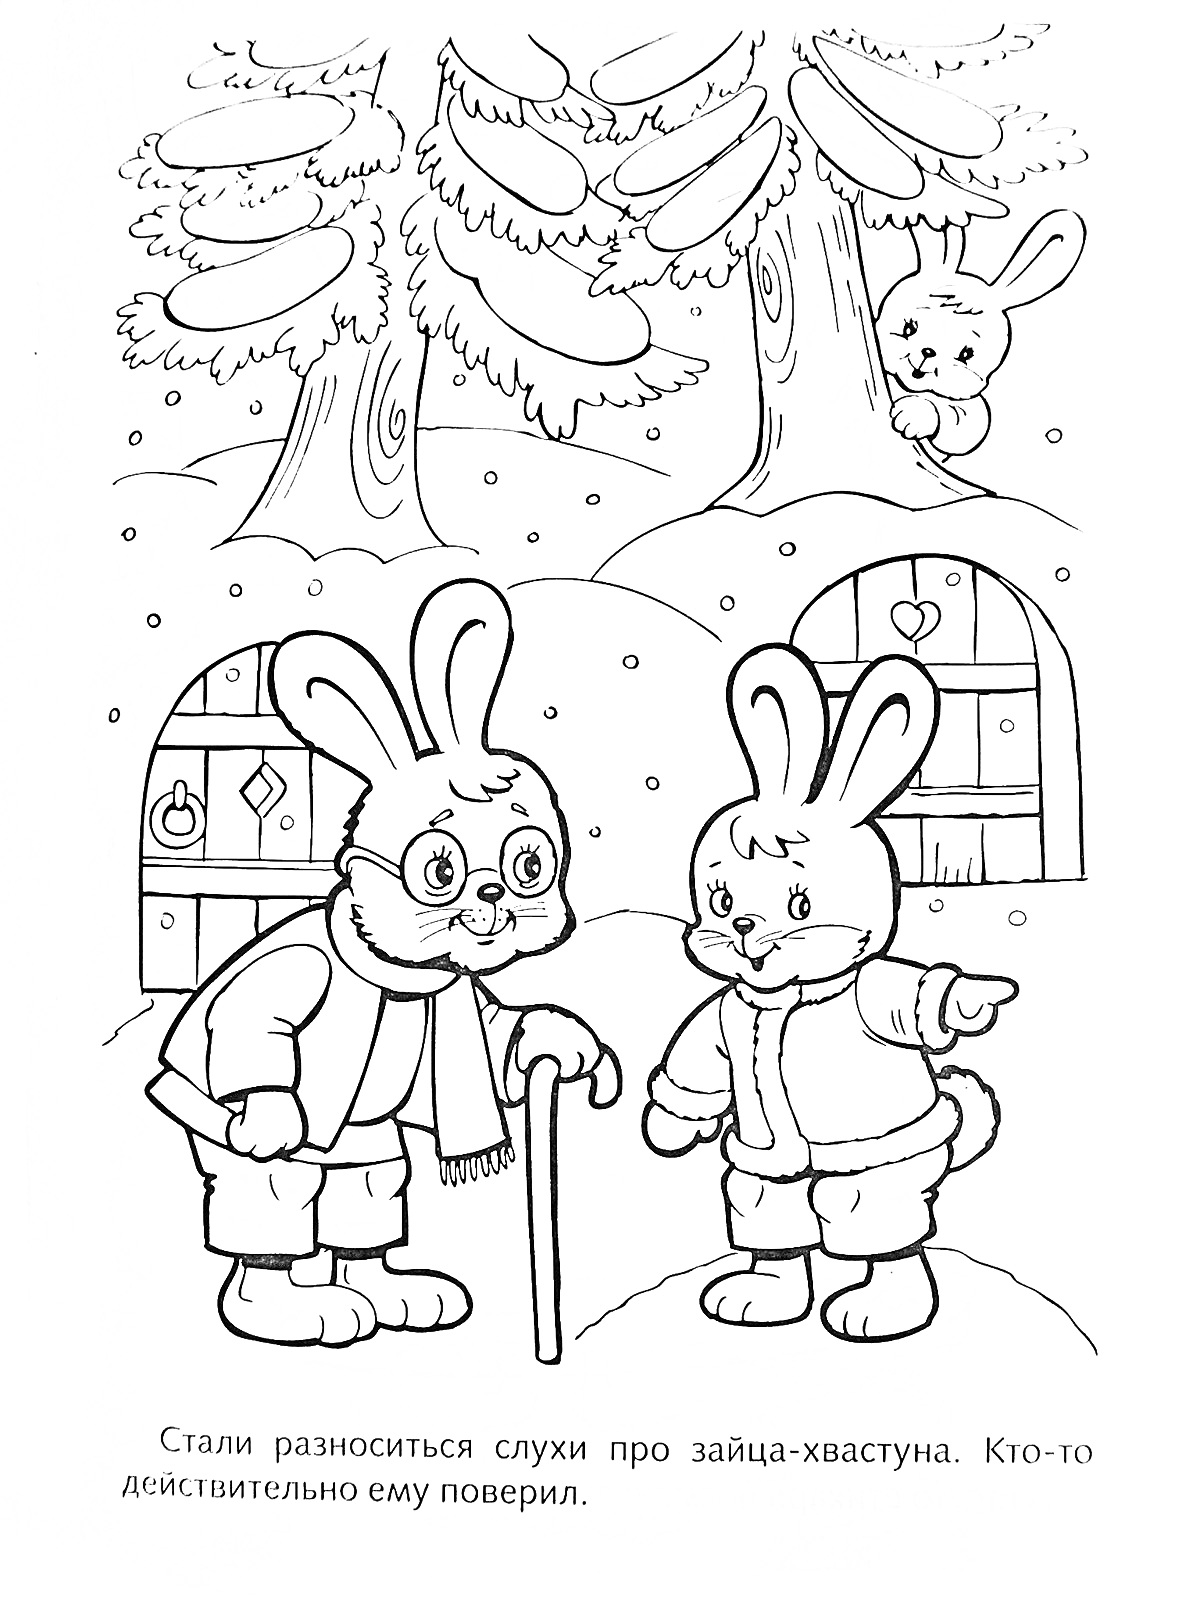 Два зайца разговаривают на улице зимой, деревянные домики и деревья на заднем плане, заяц-хвастун прячется за кустом.